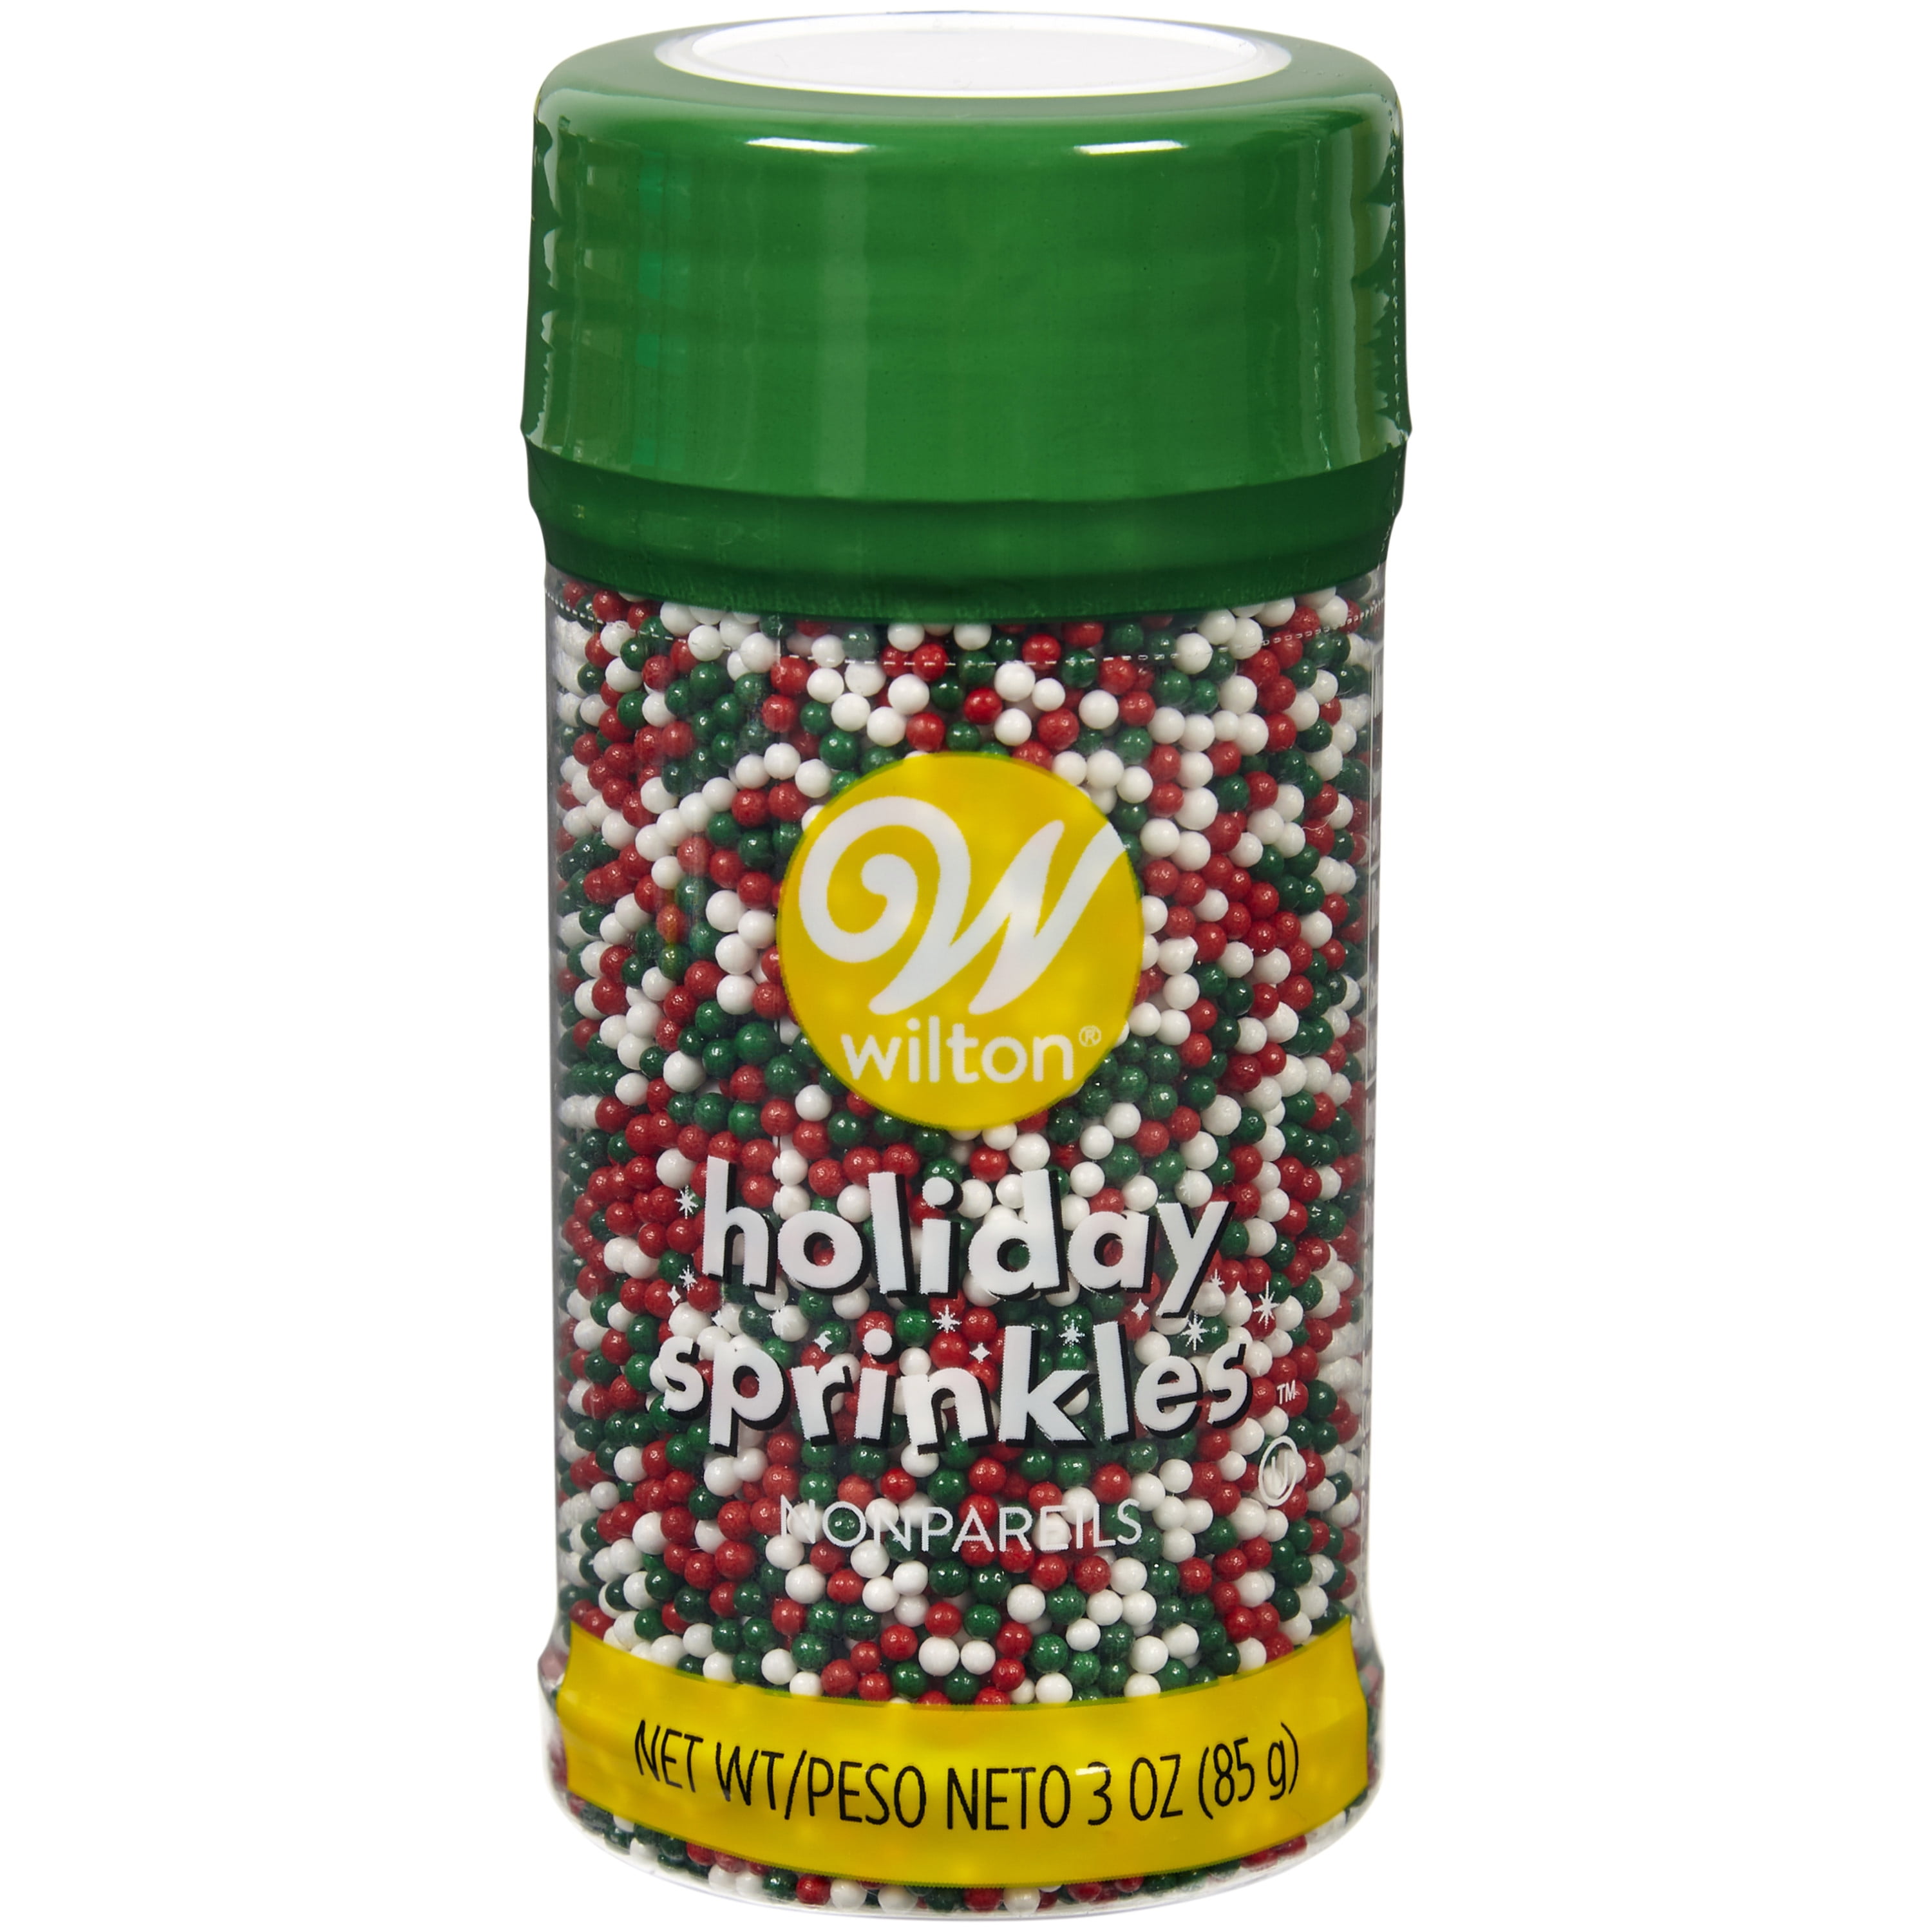 Wilton Traditional Christmas Nonpareils Sprinkle Mix, 3 oz.